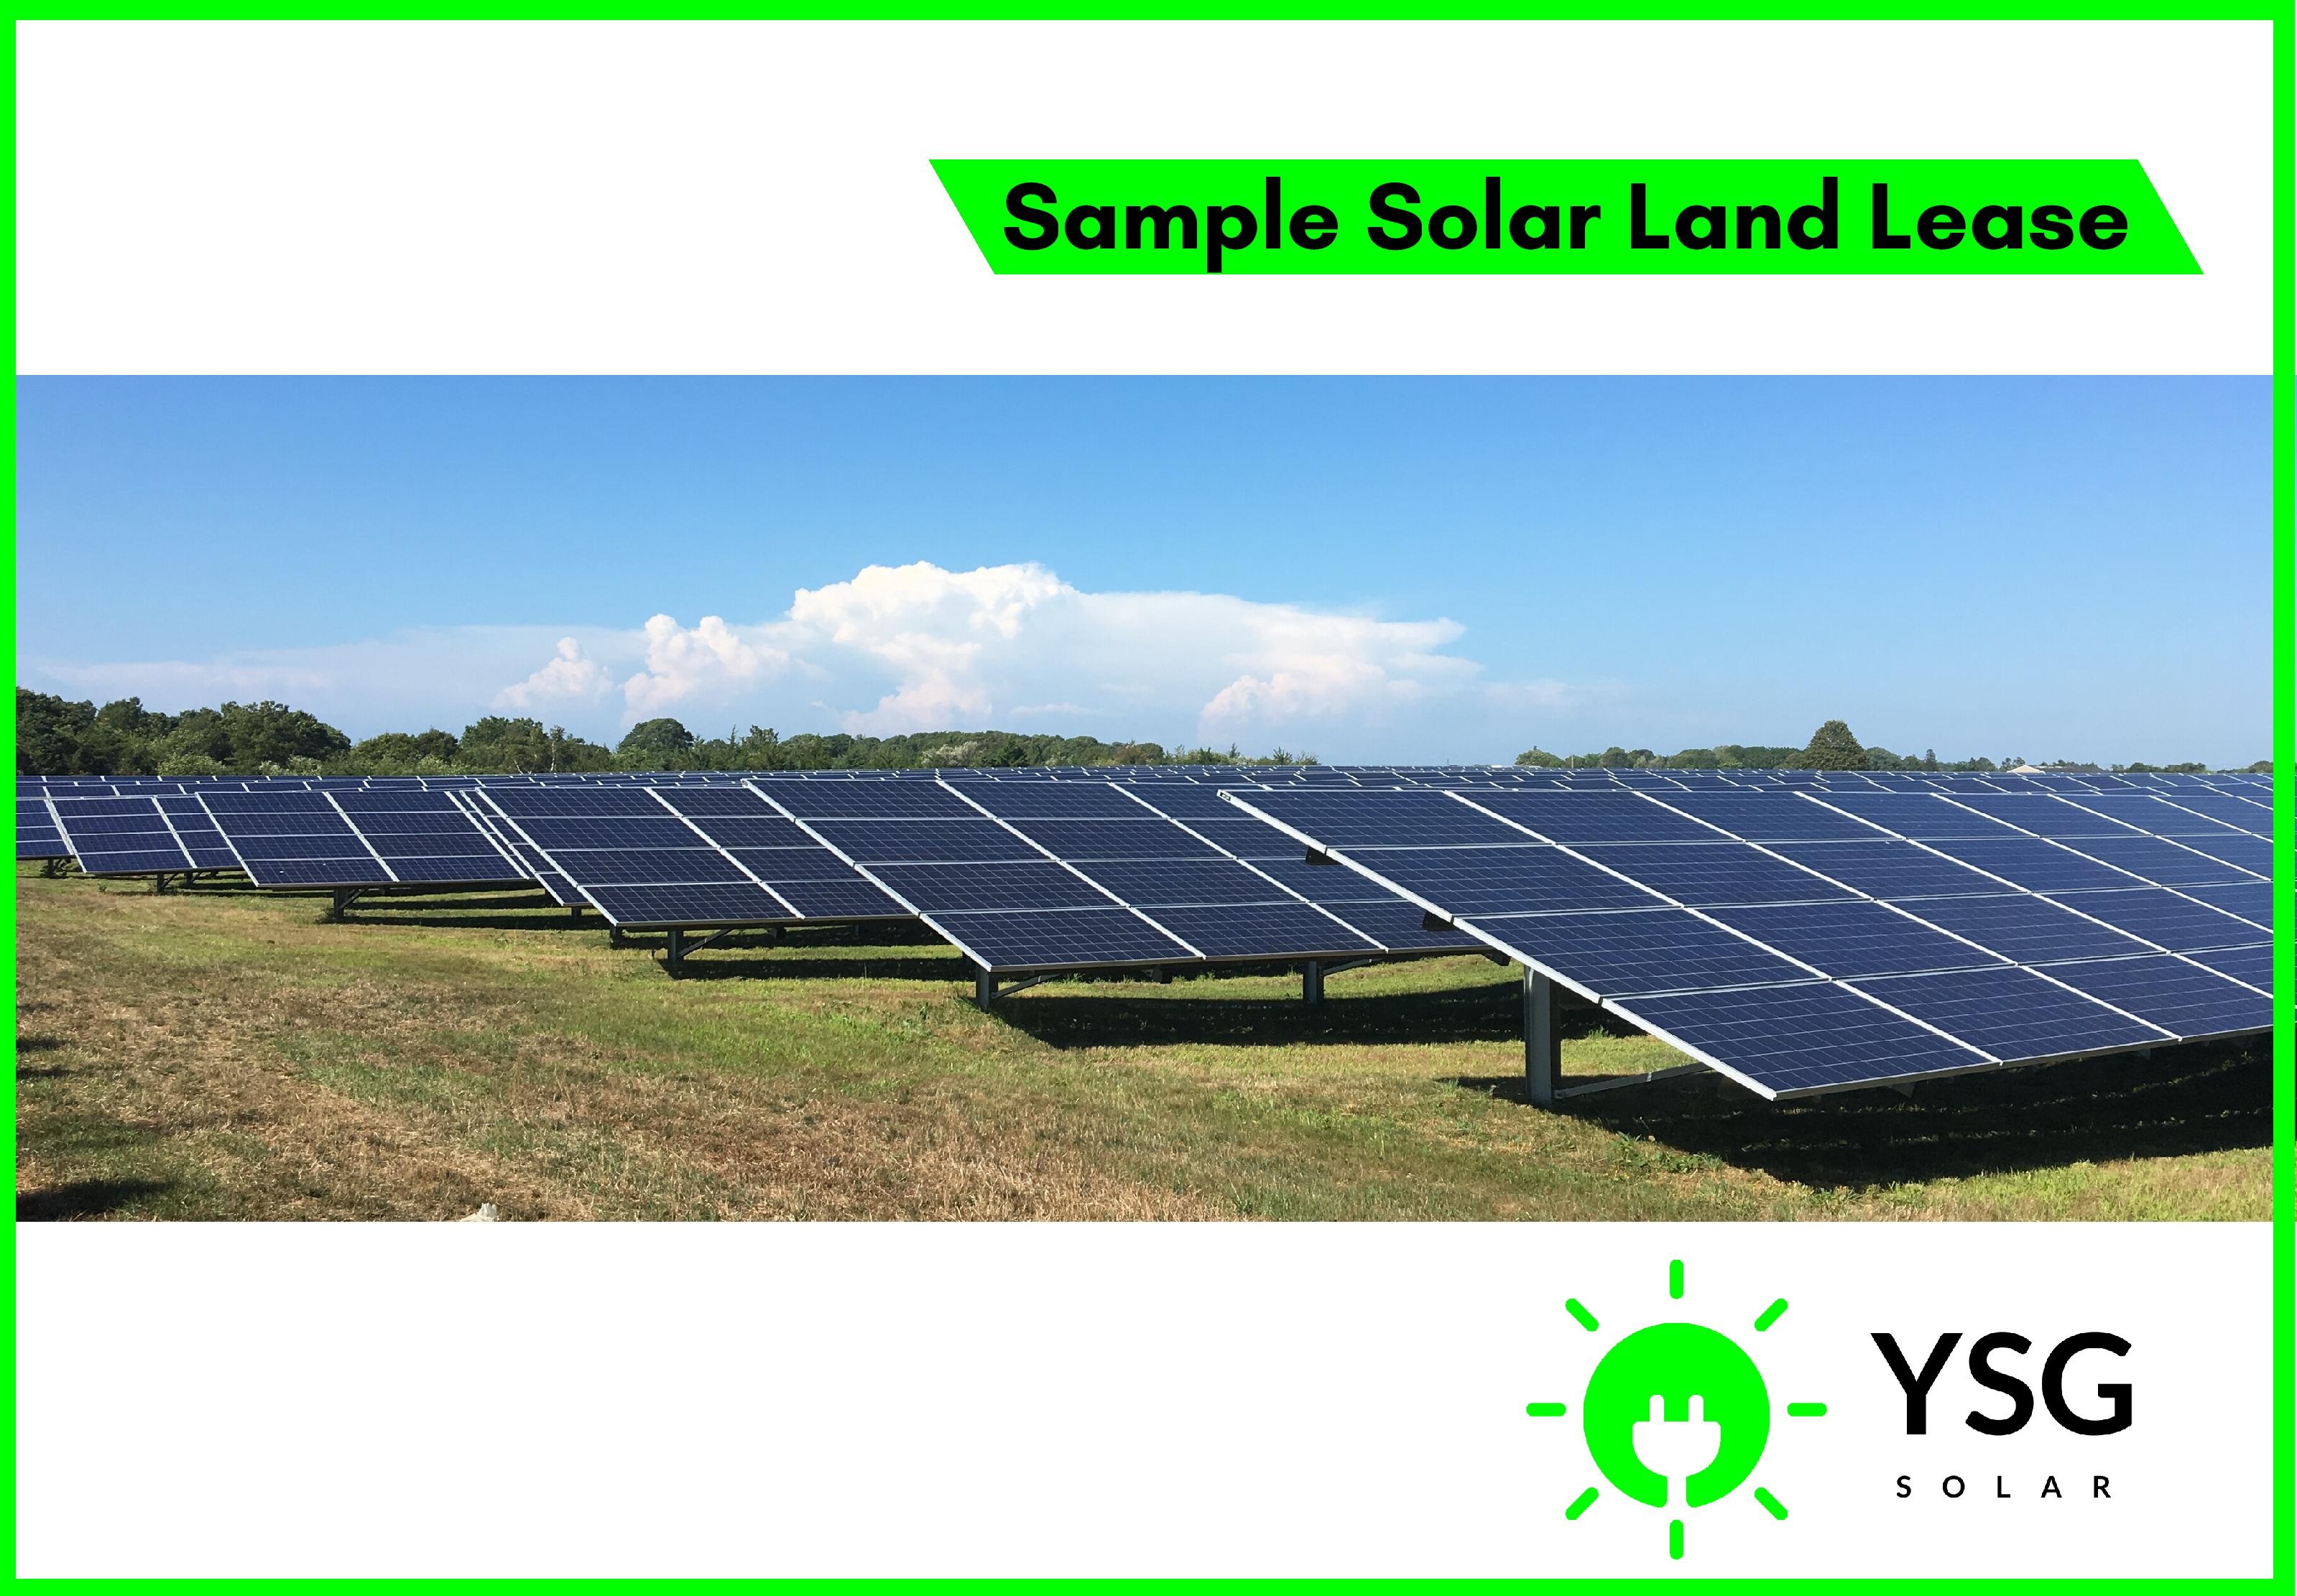 Solar Land Leasing, YSG Solar